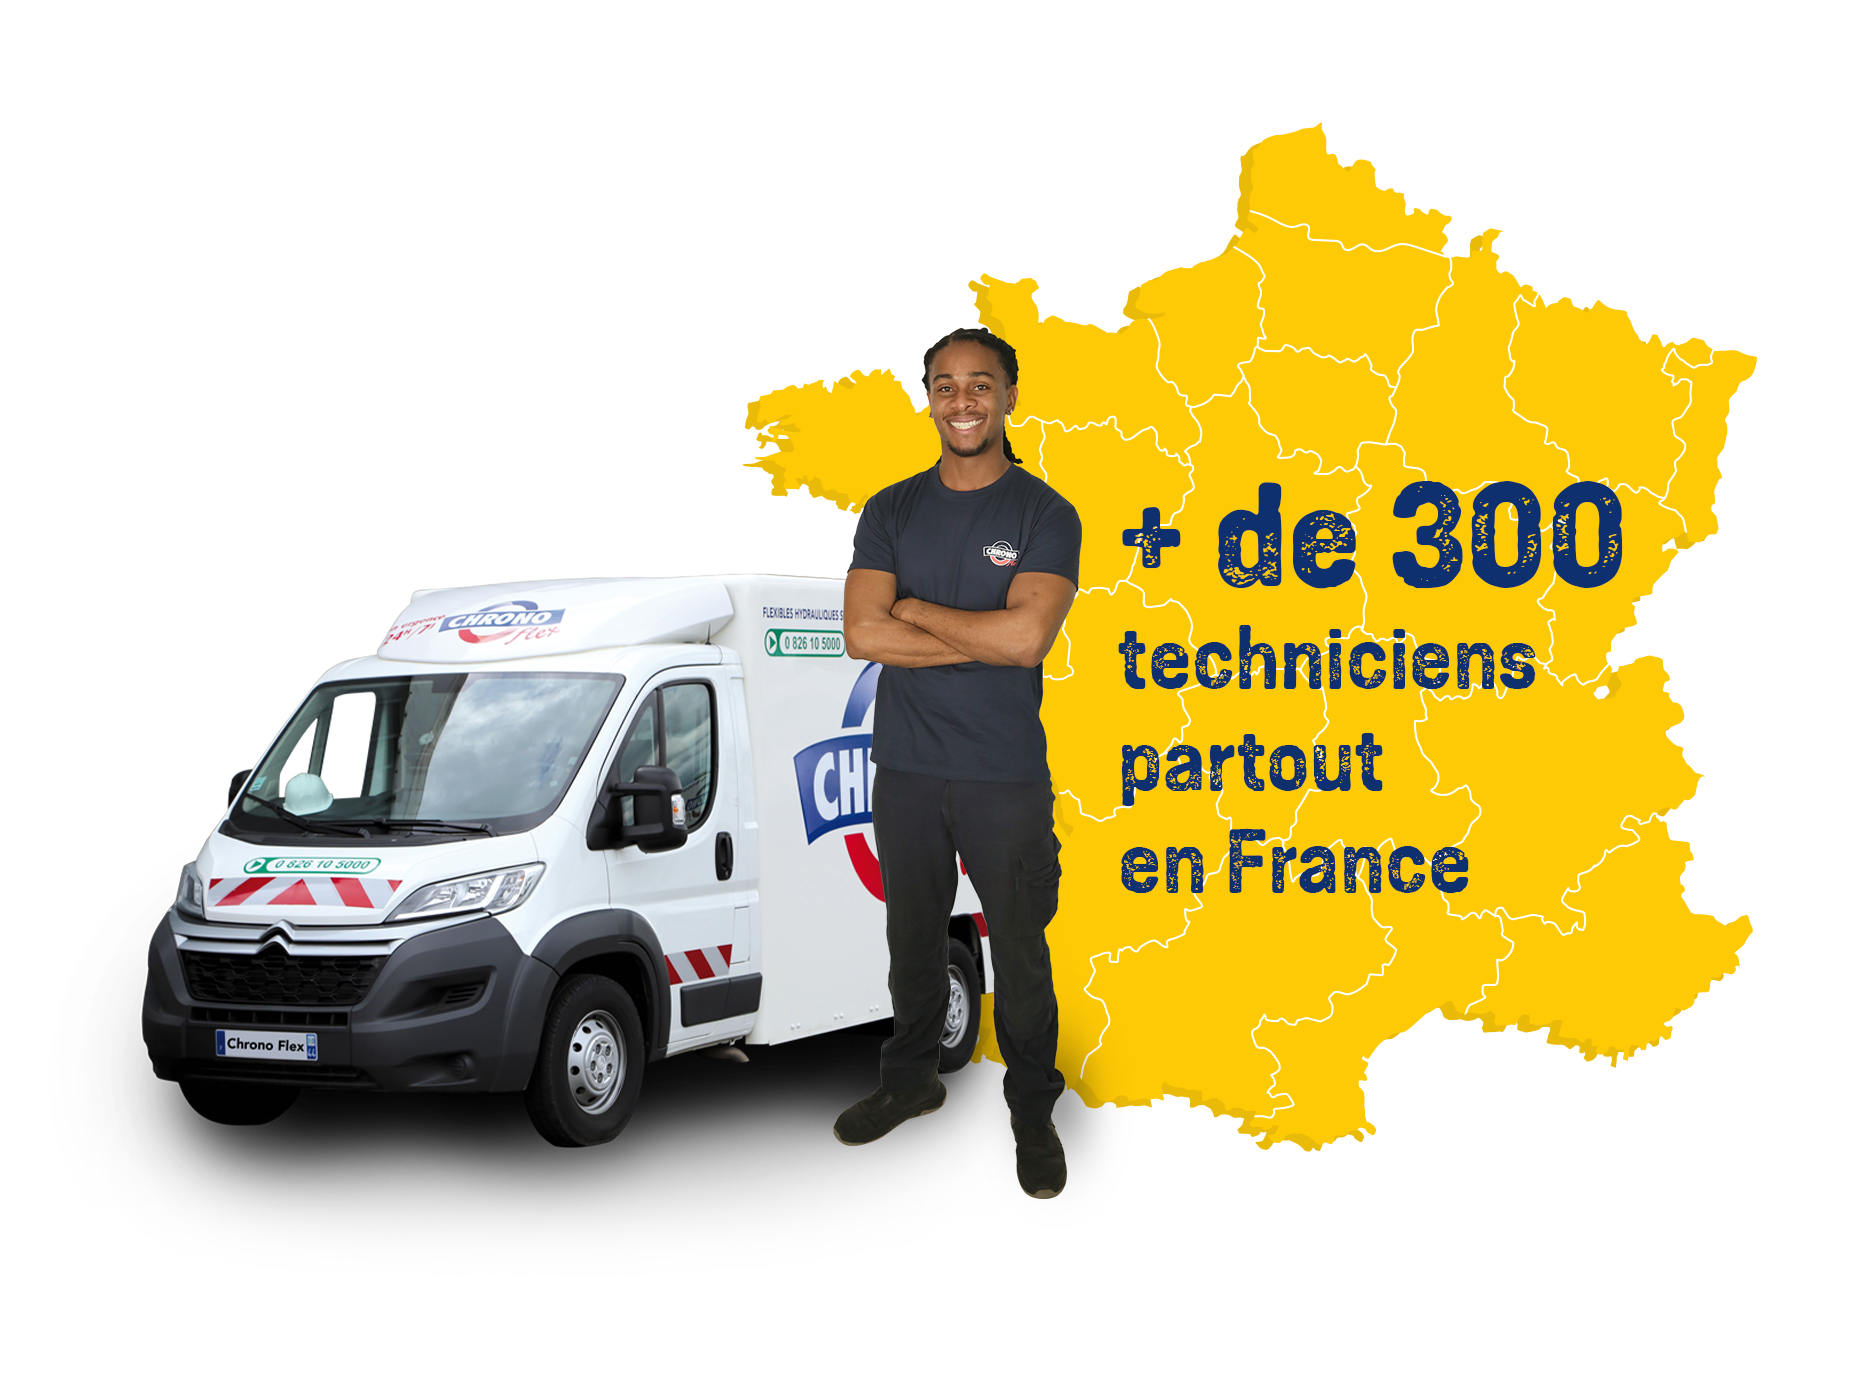 Réparation carte Renault Espace 4 sur Strasbourg, Colmar, Mulhouse